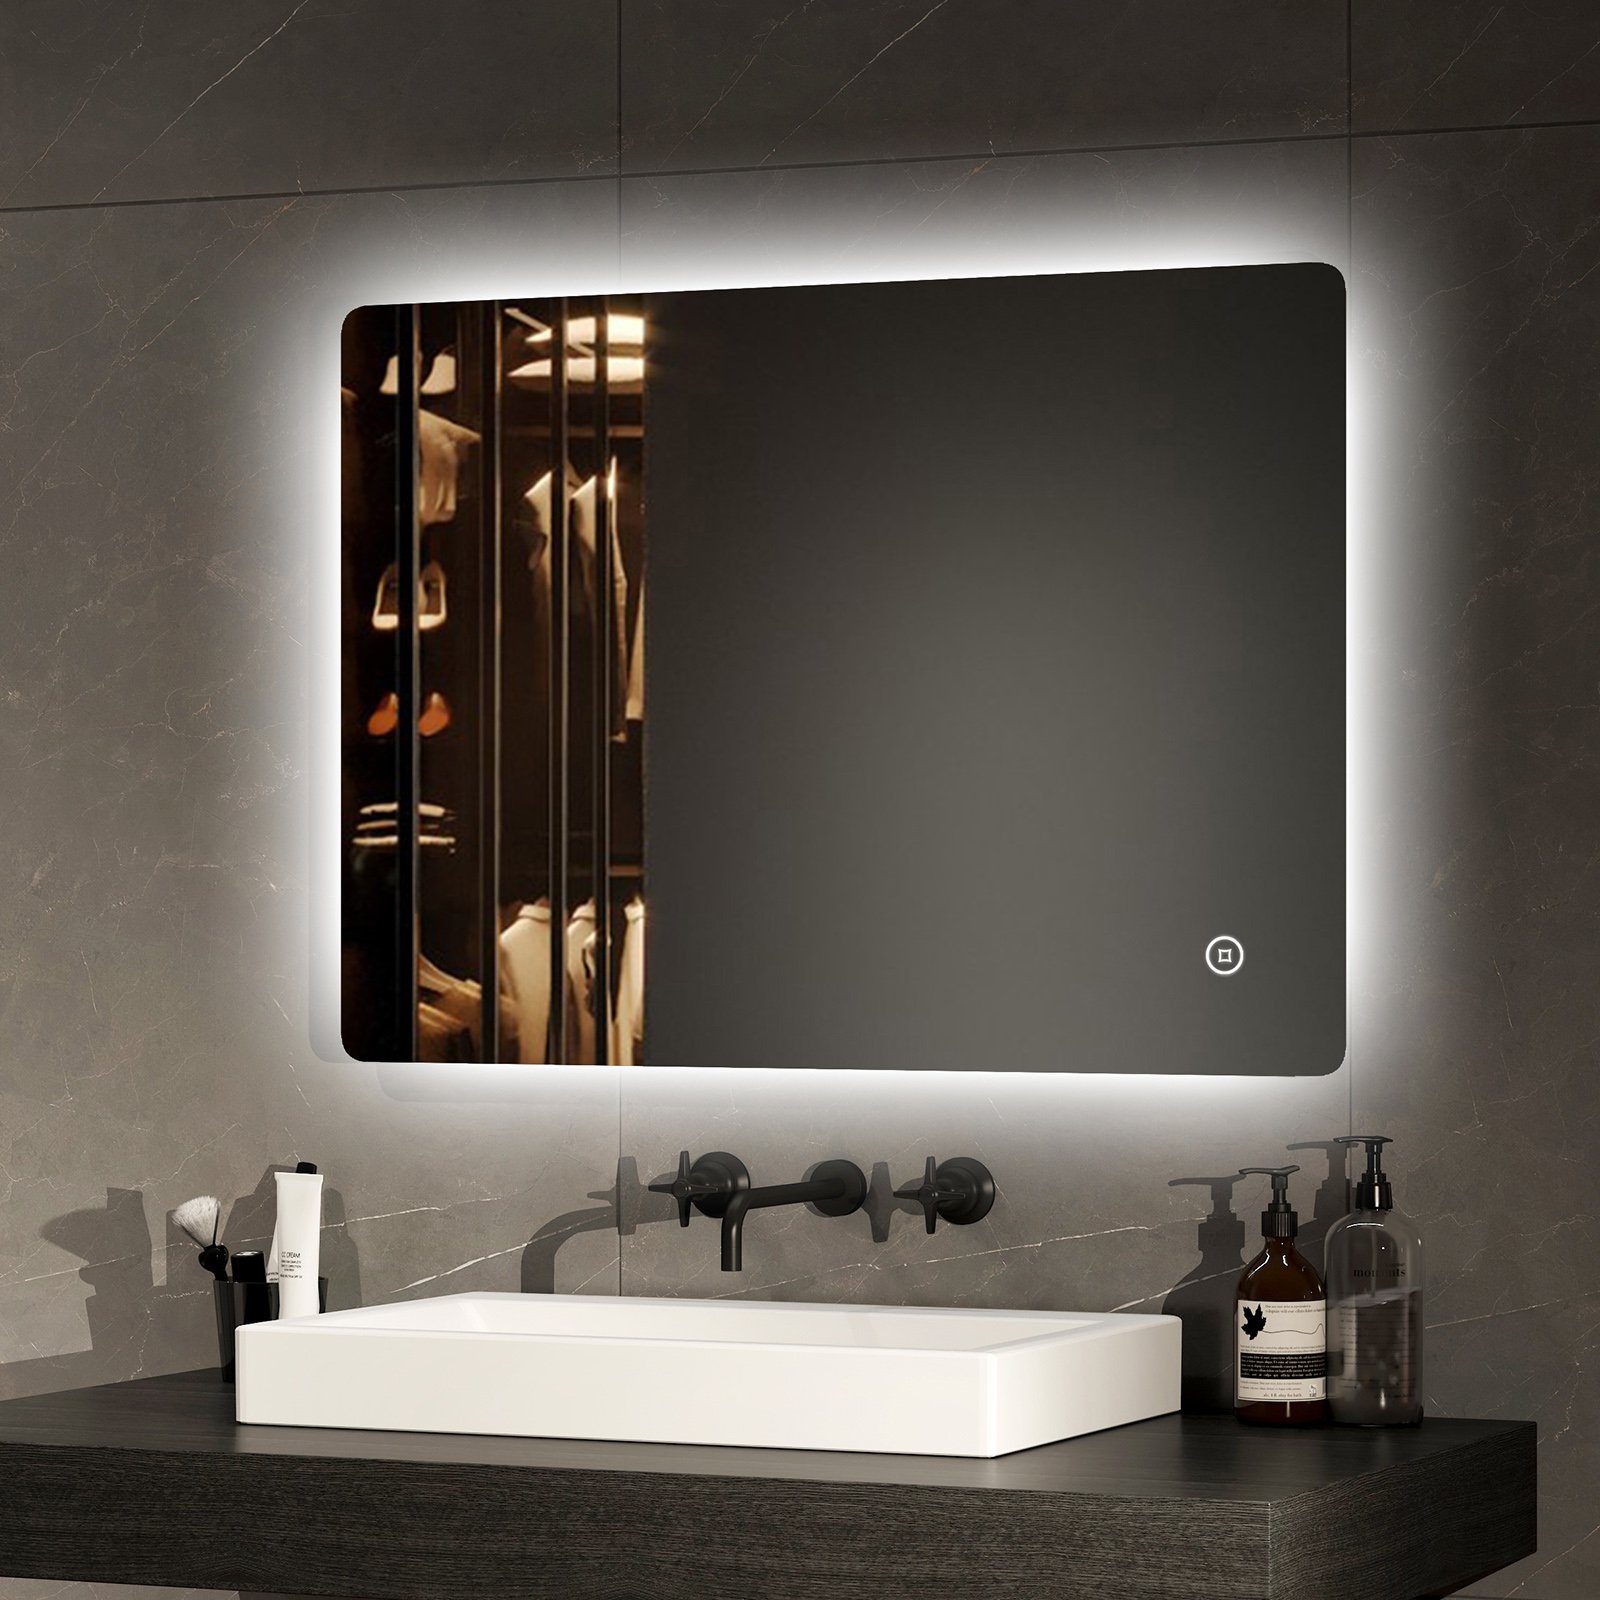 EMKE Badspiegel mit Beleuchtung Badezimmerspiegel Wandspiegel mit LED (Modell 09, Veritial und Horizontal möglich), mit Intelligenter Touchschalter, Kaltweißes Licht 6500K